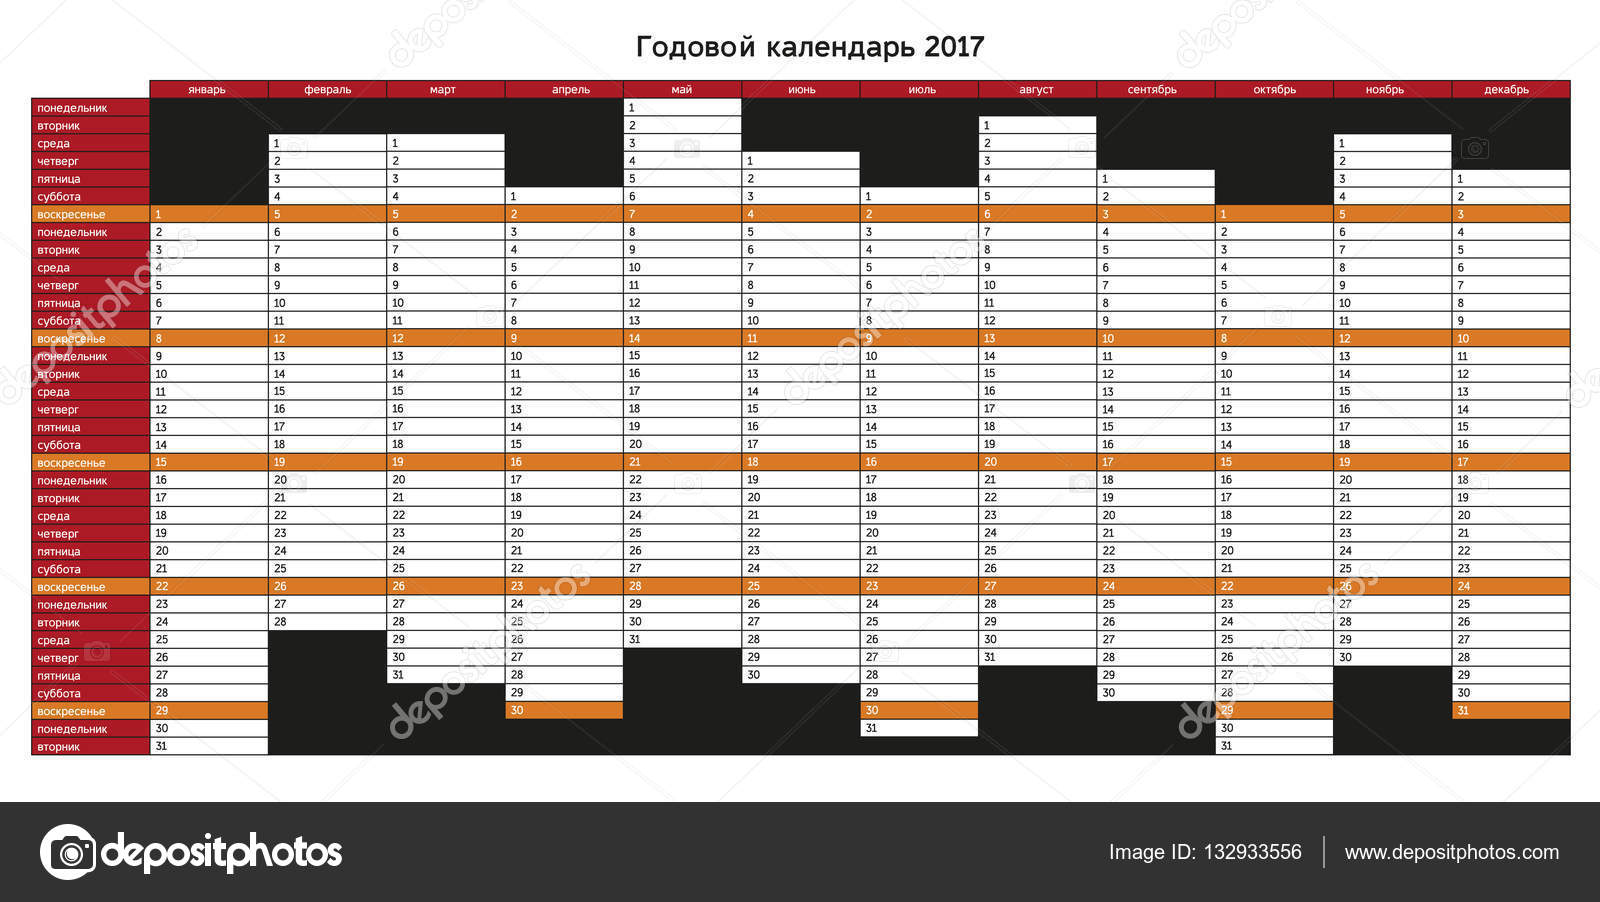 seznamka zdarma v ruštině jak špatné může být skenování datování